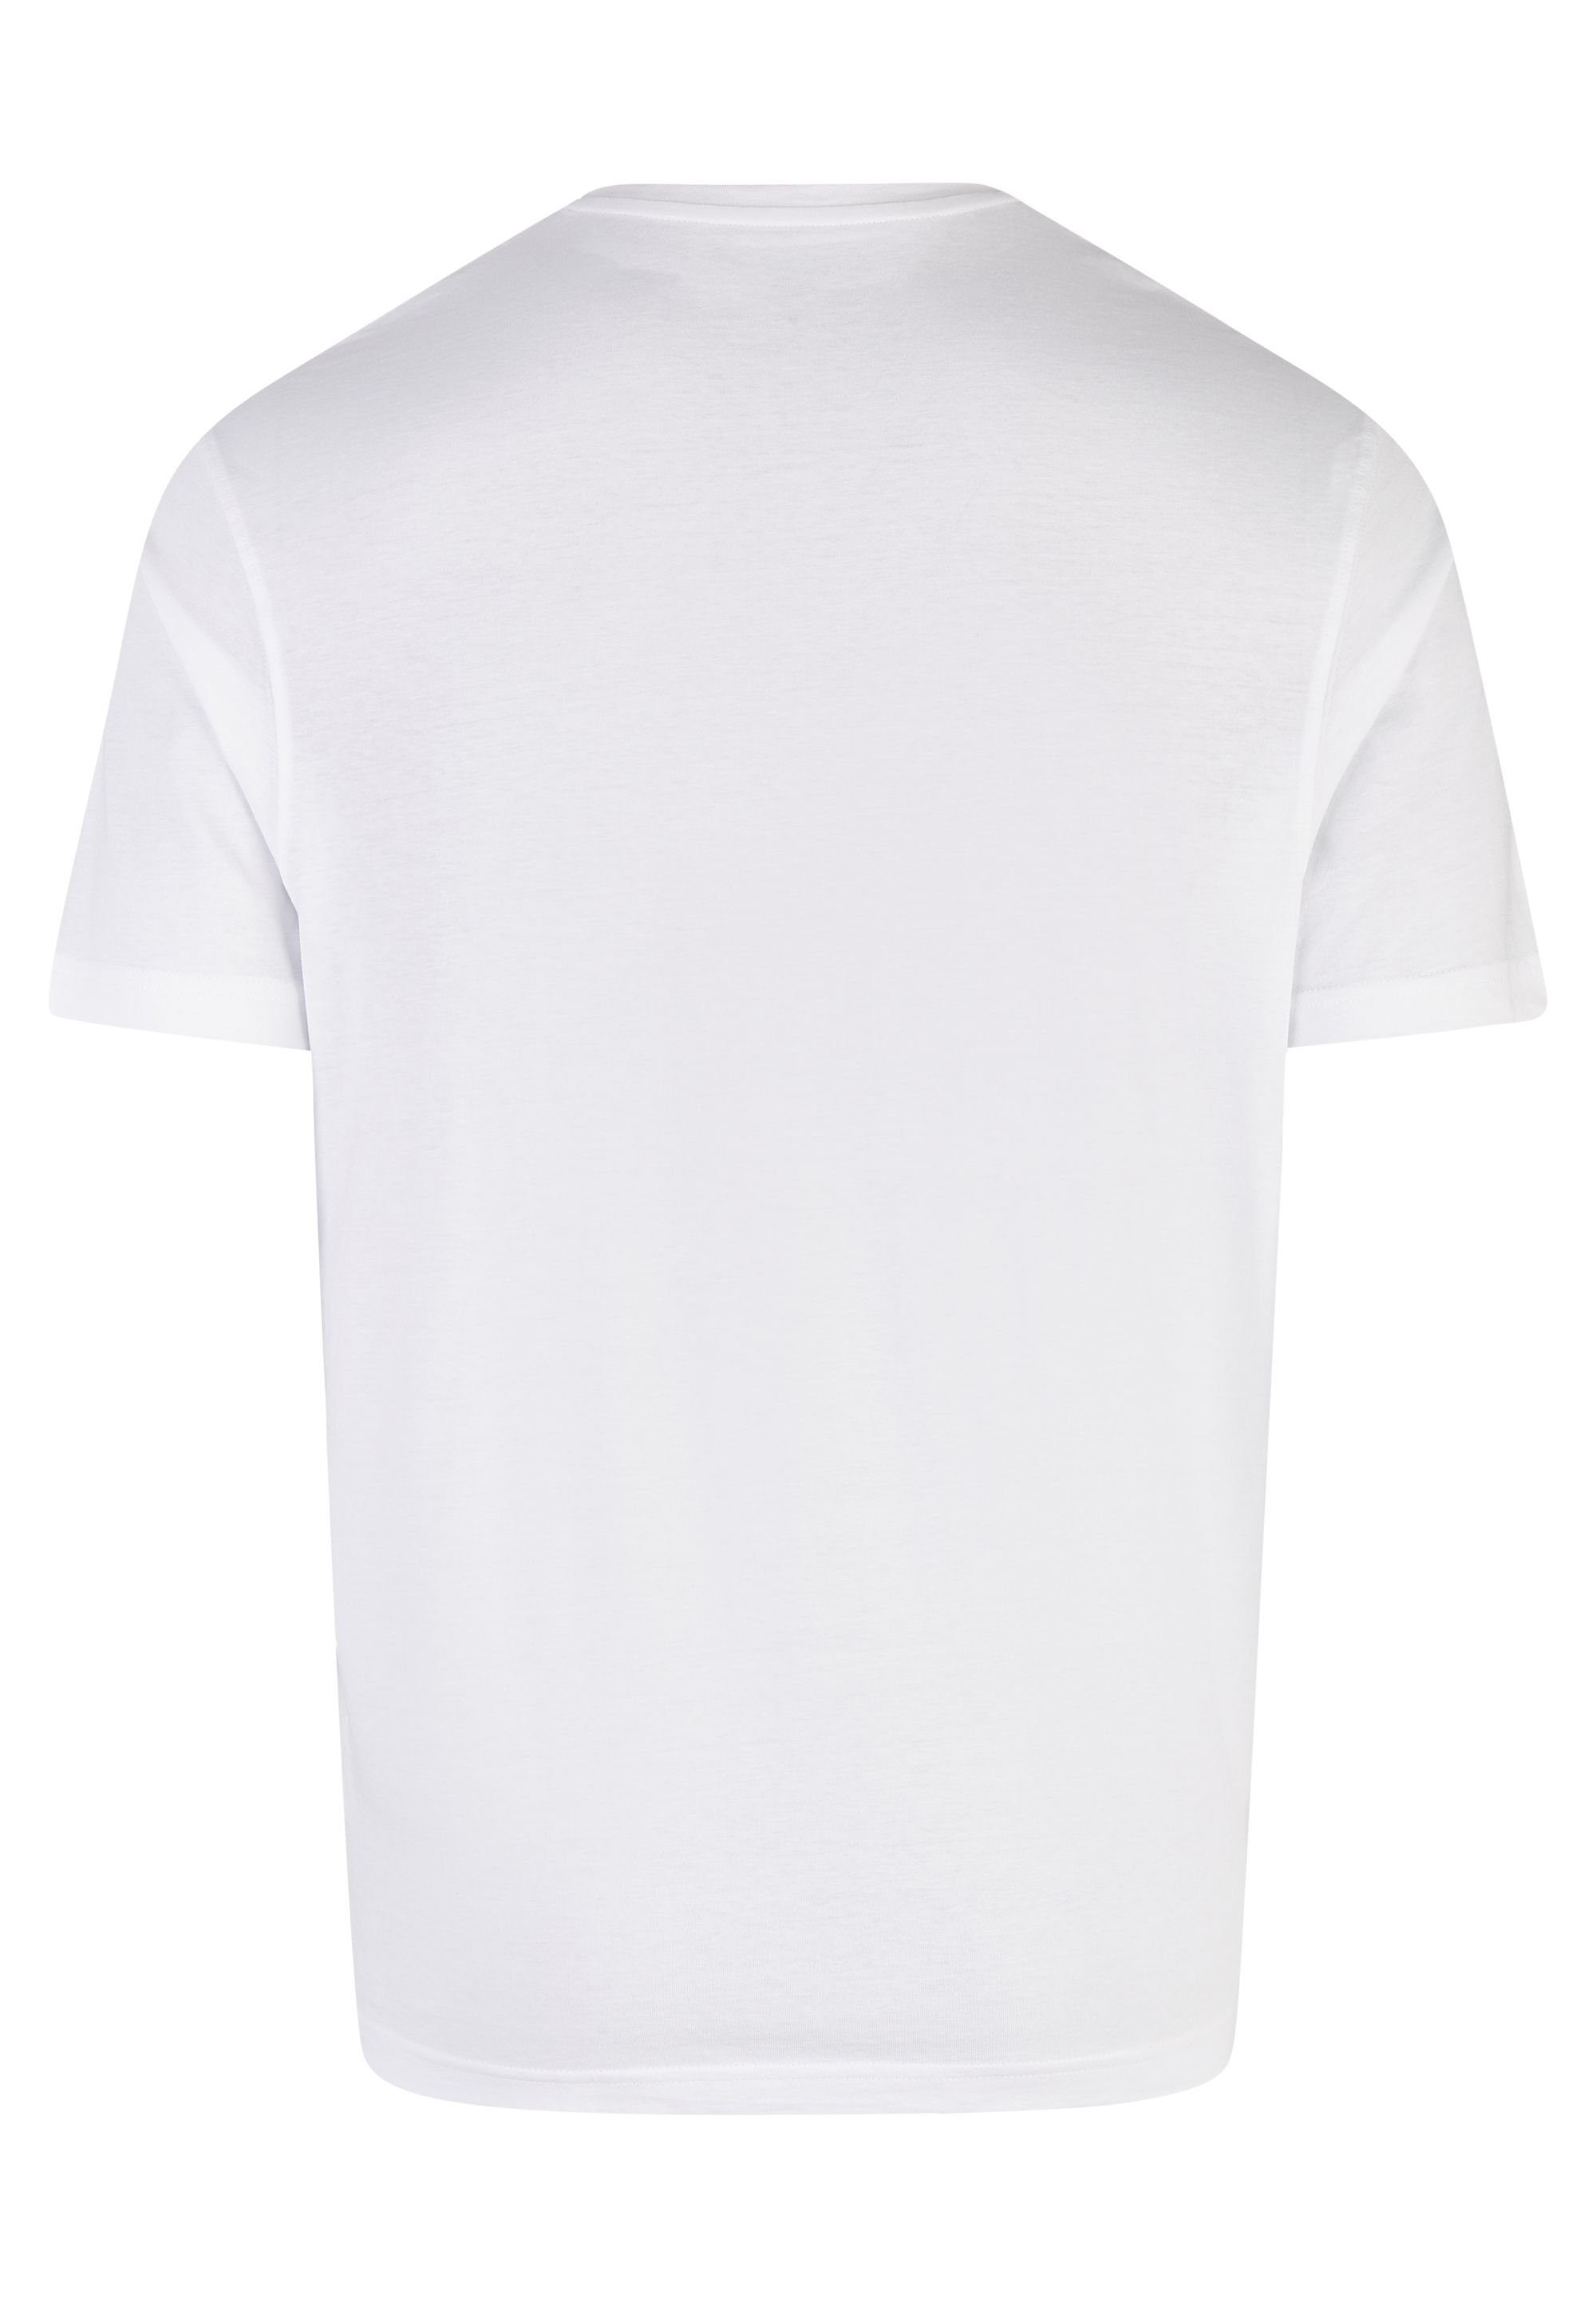 HECHTER PARIS V-Shirt white (2-tlg)